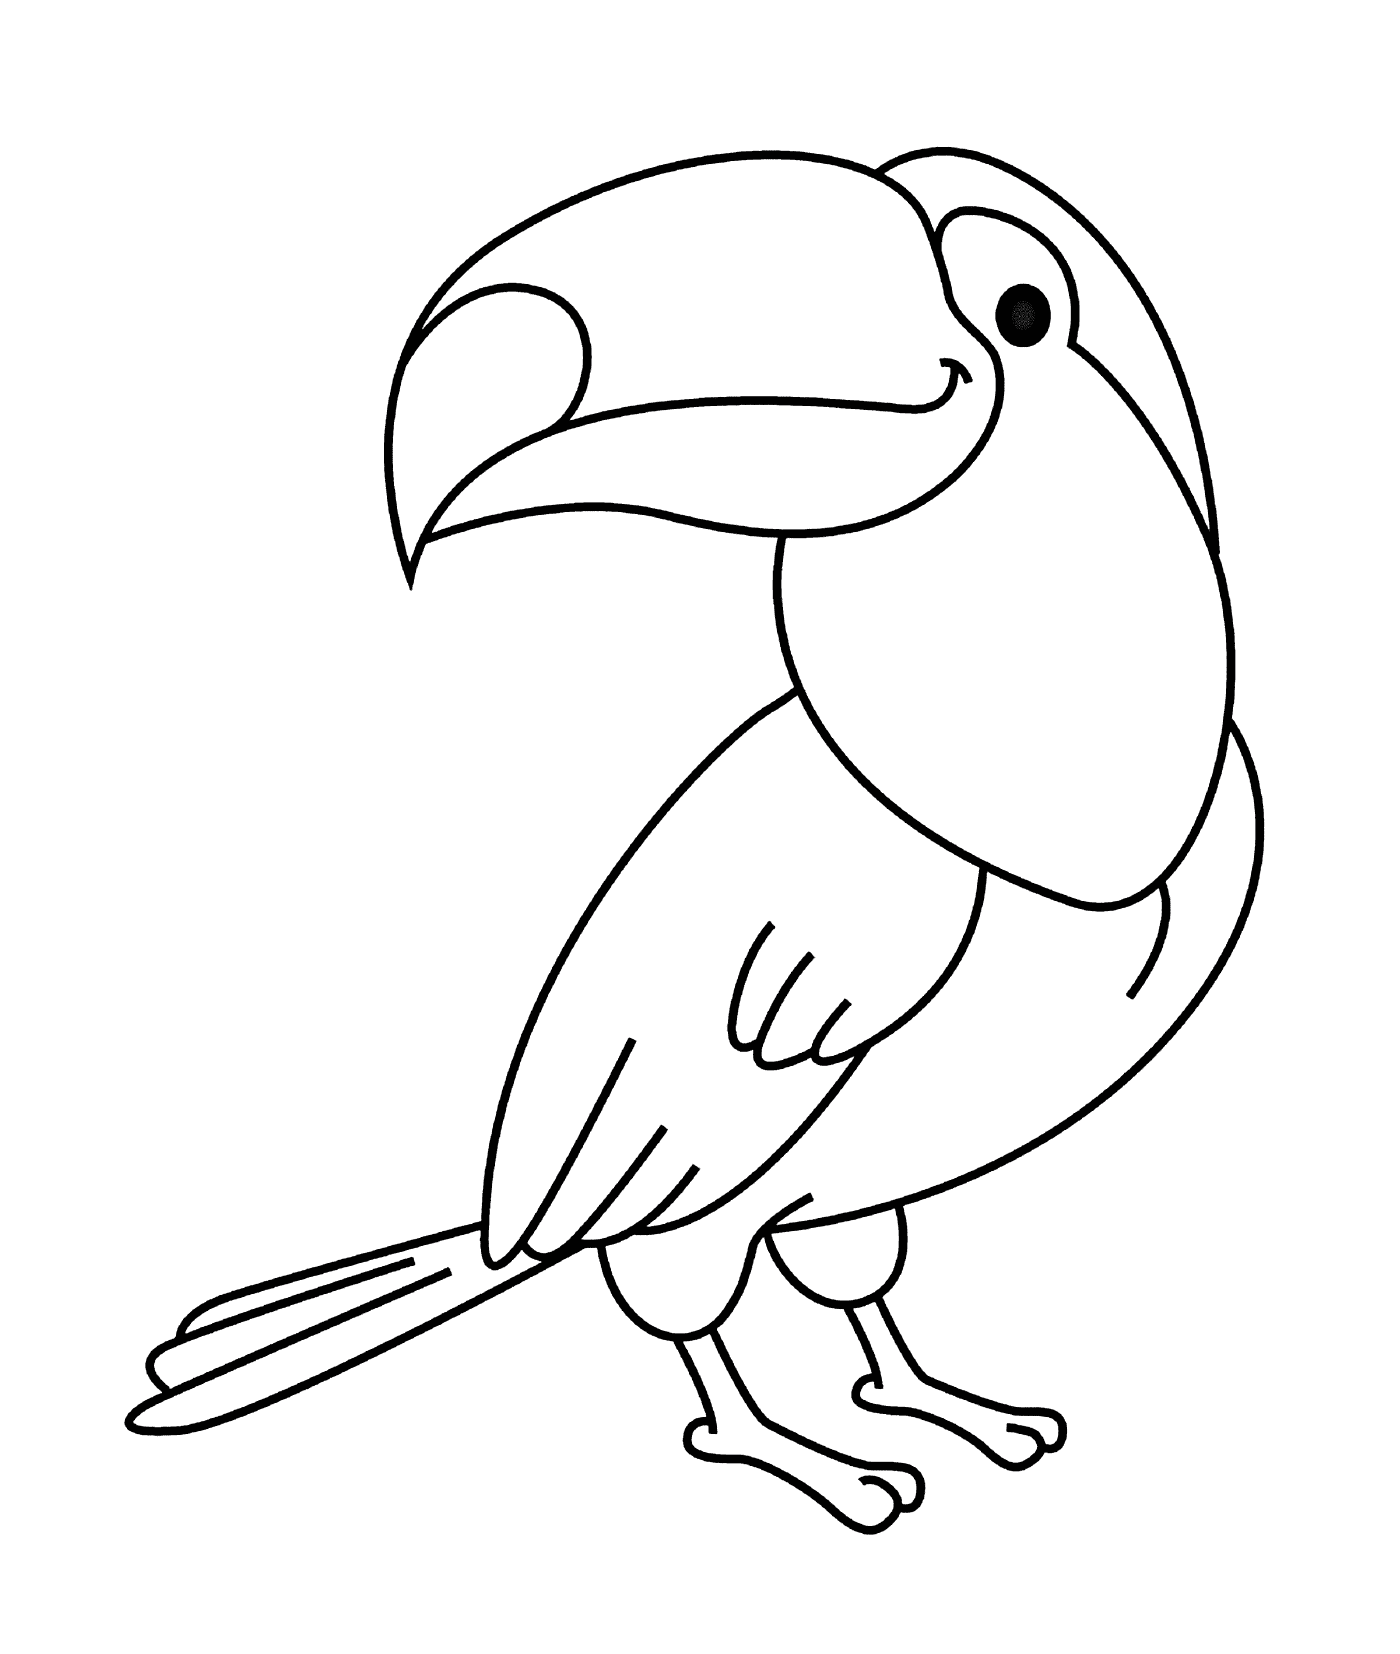  Туканская птица 